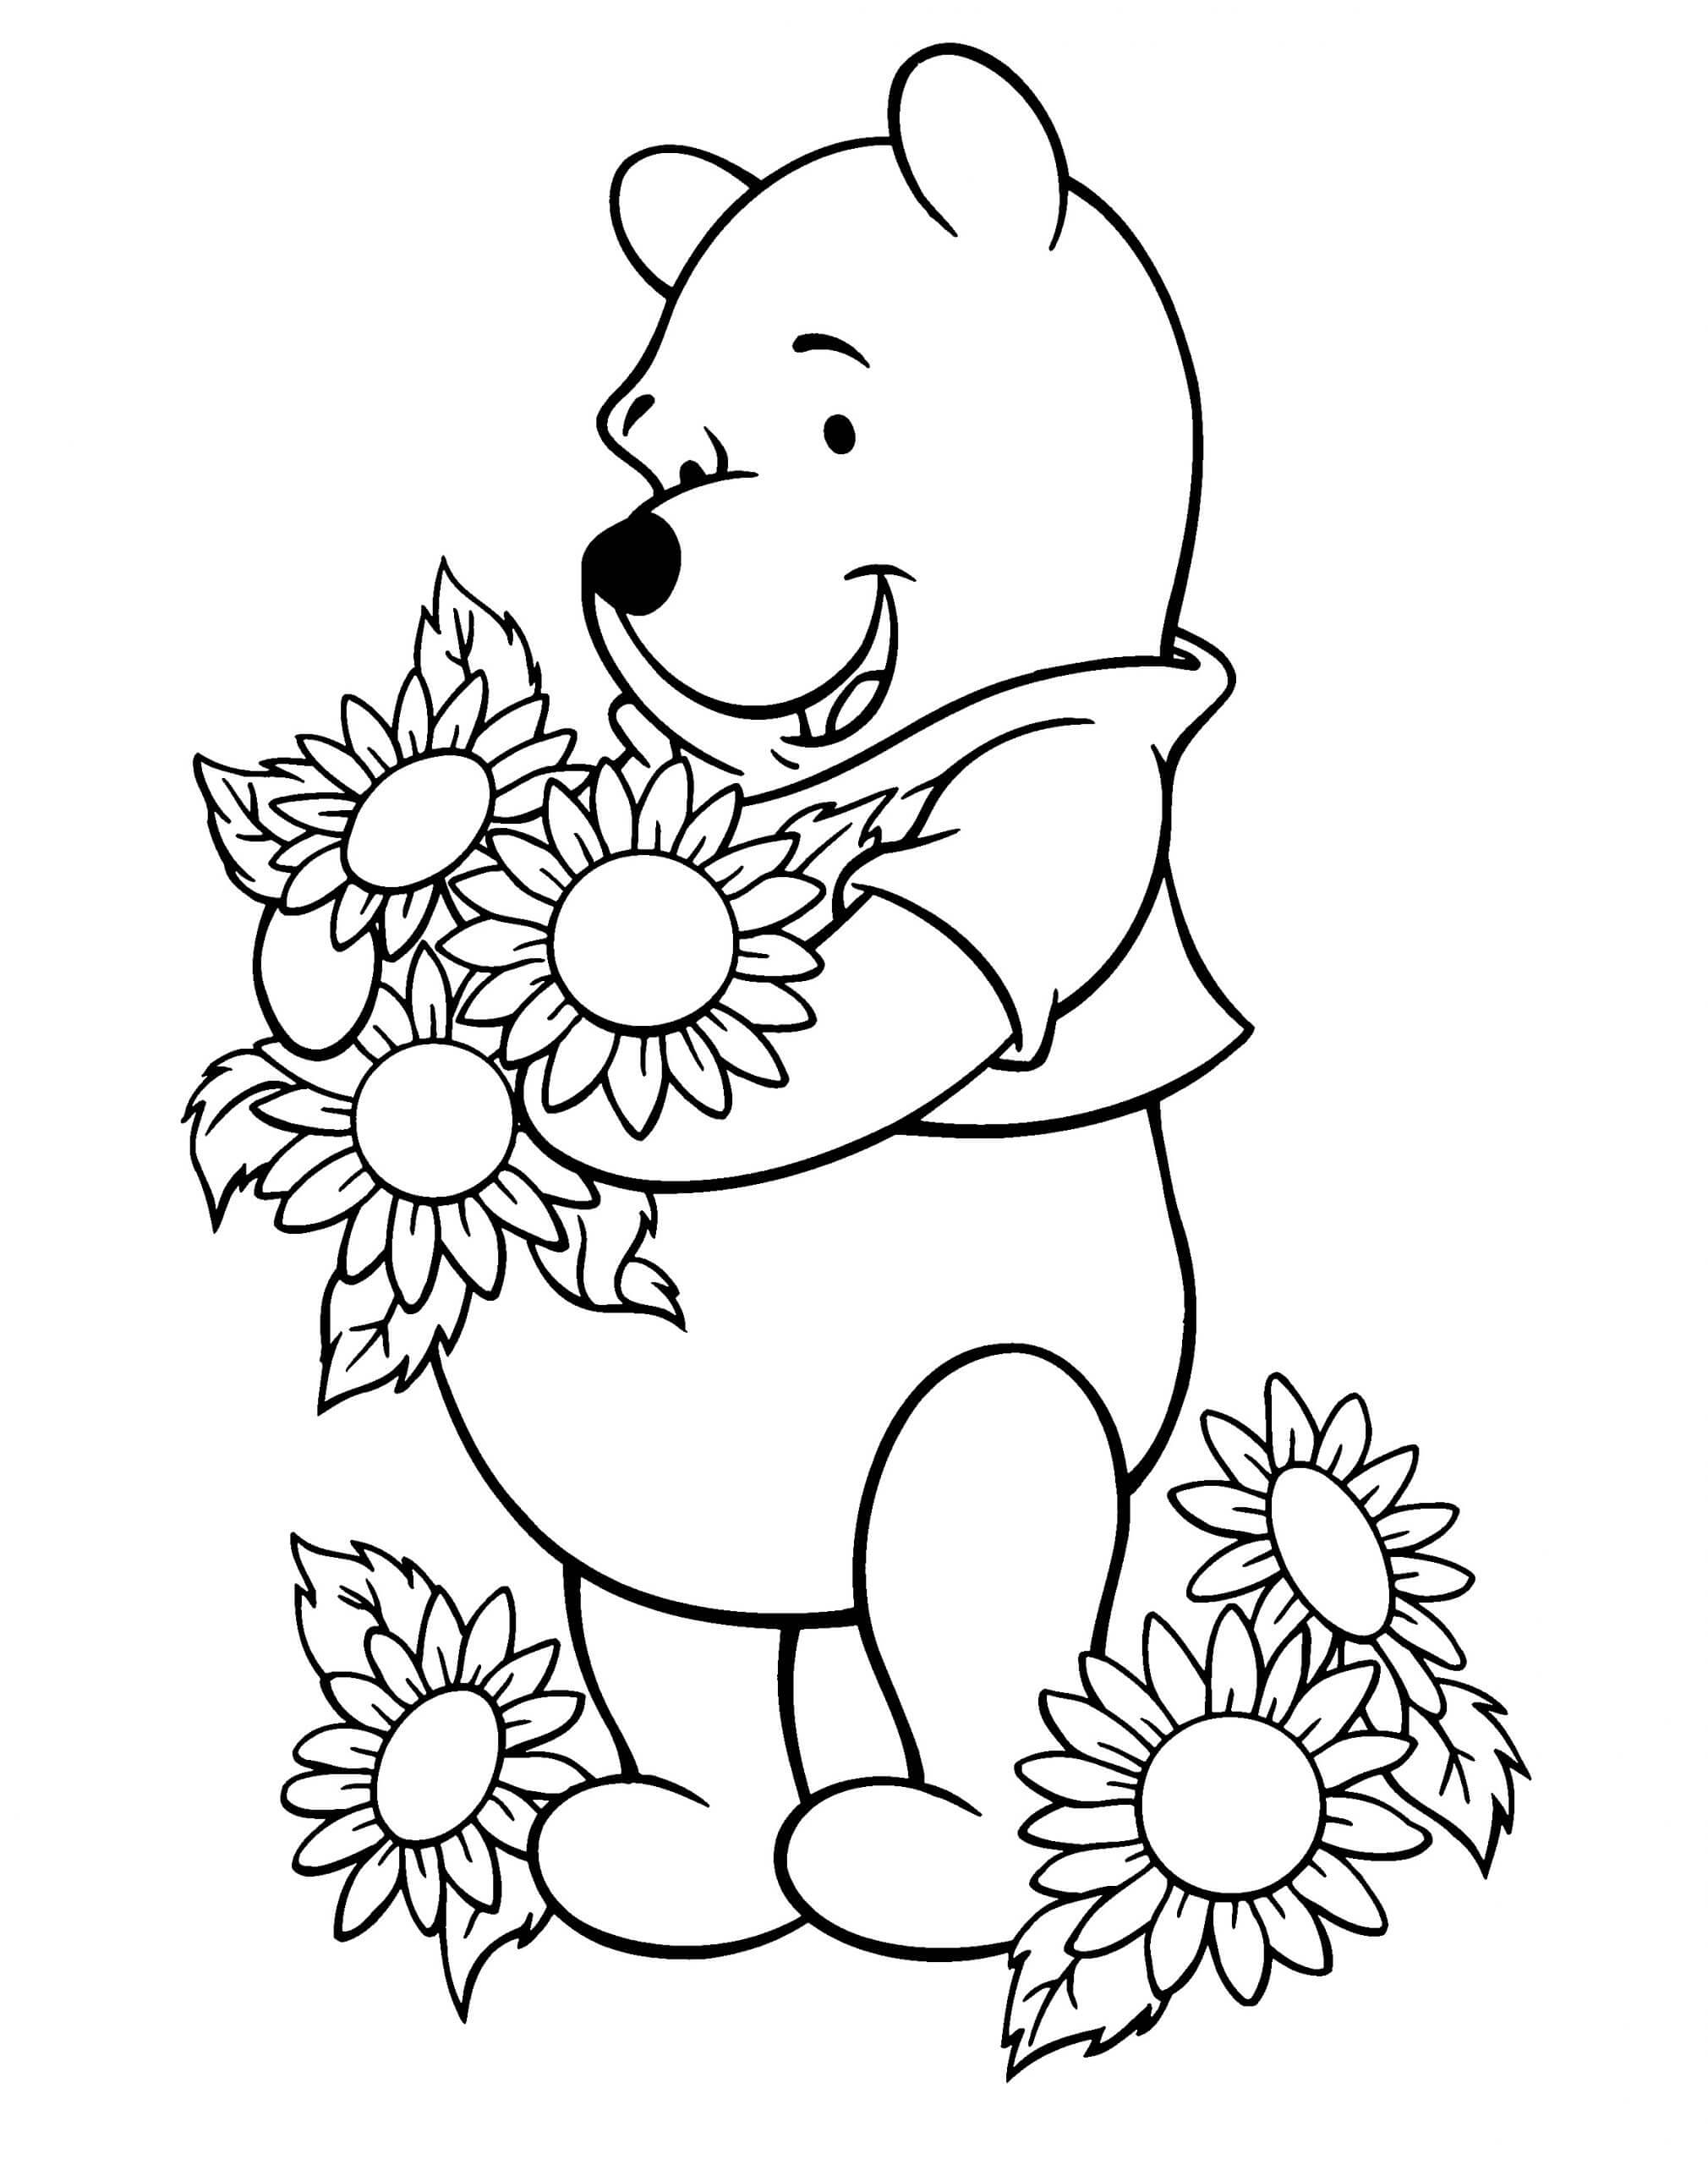 Pooh Bär mit Sonnenblumen